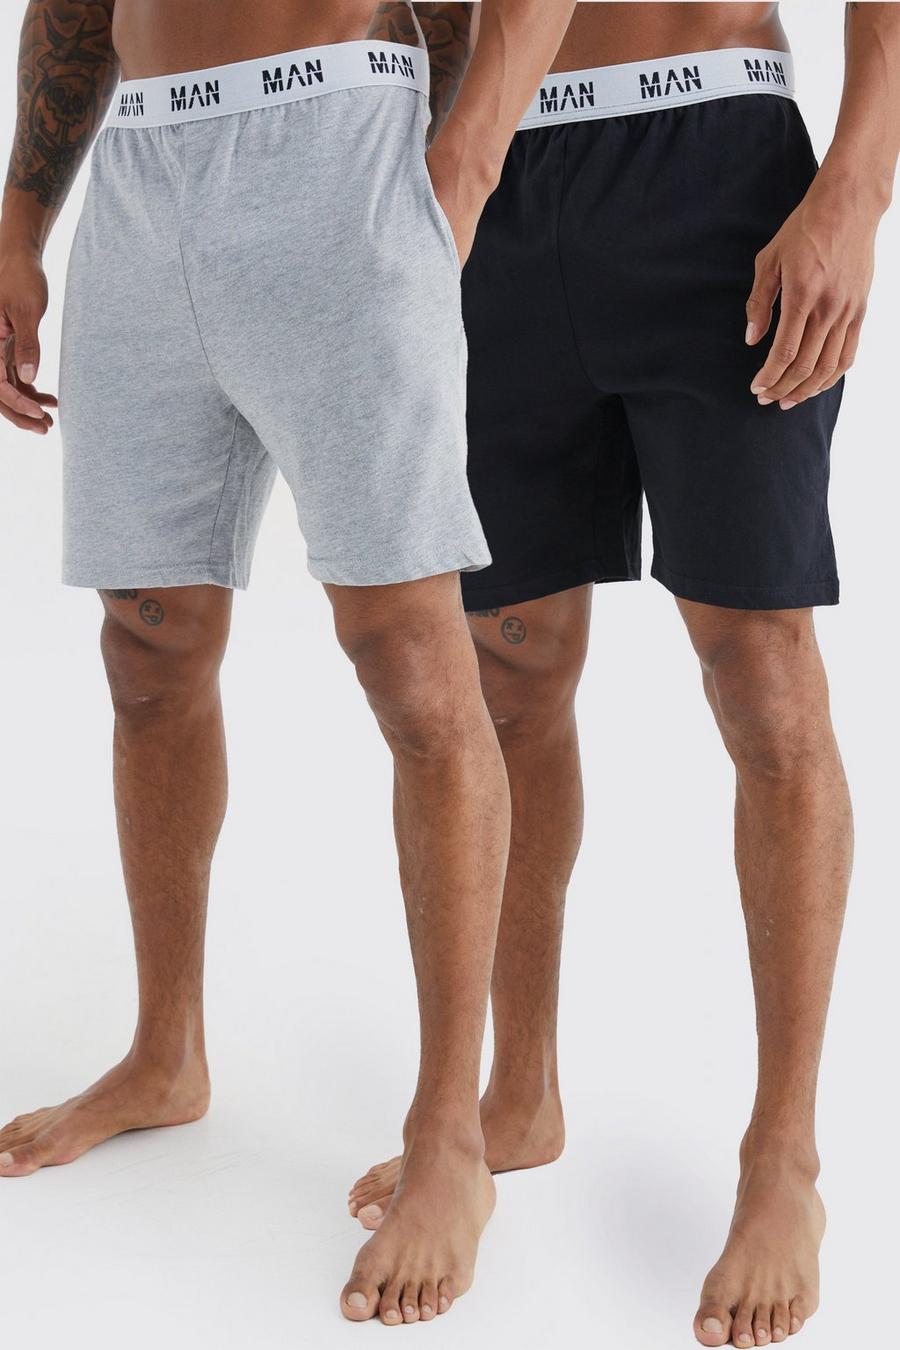 Multi 2 Pack Man Loungewear Shorts